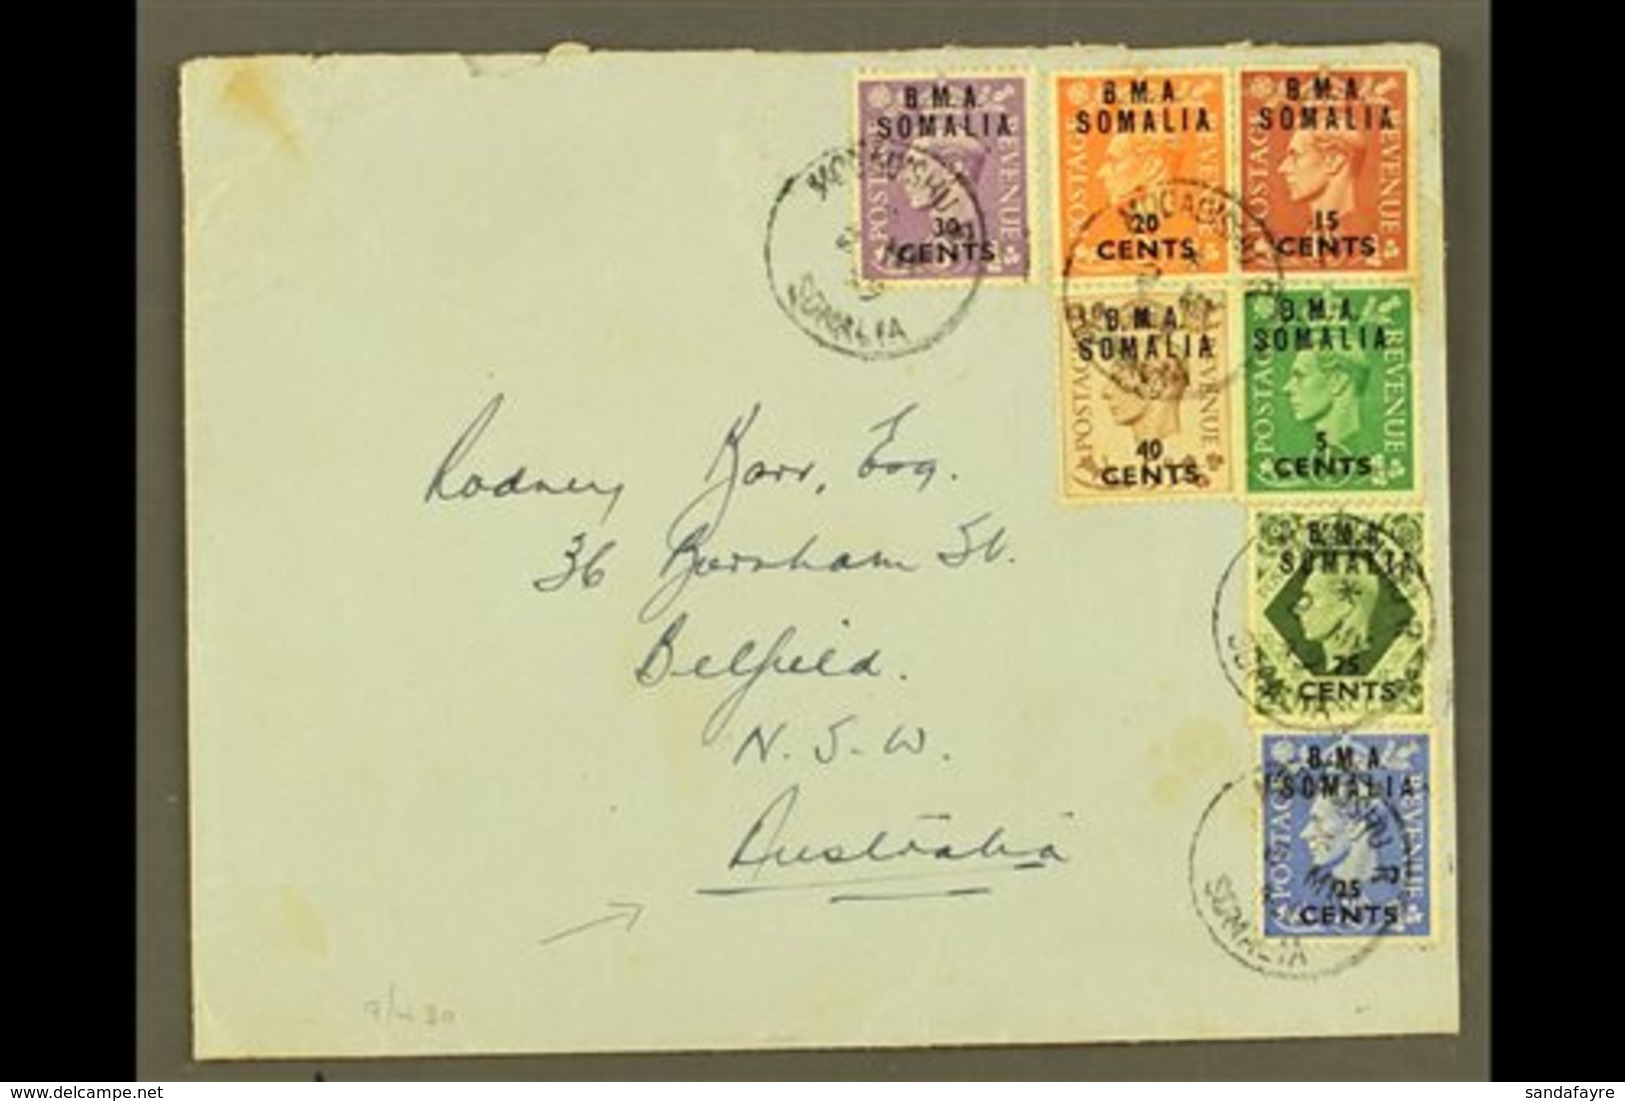 SOMALIA  1949 Plain Envelope To Australia, Franked KGVI 5c On ½d To 40c On 5d & 75c On 9d "B.M.A. SOMALIA" Ovpts, SG S10 - Italienisch Ost-Afrika